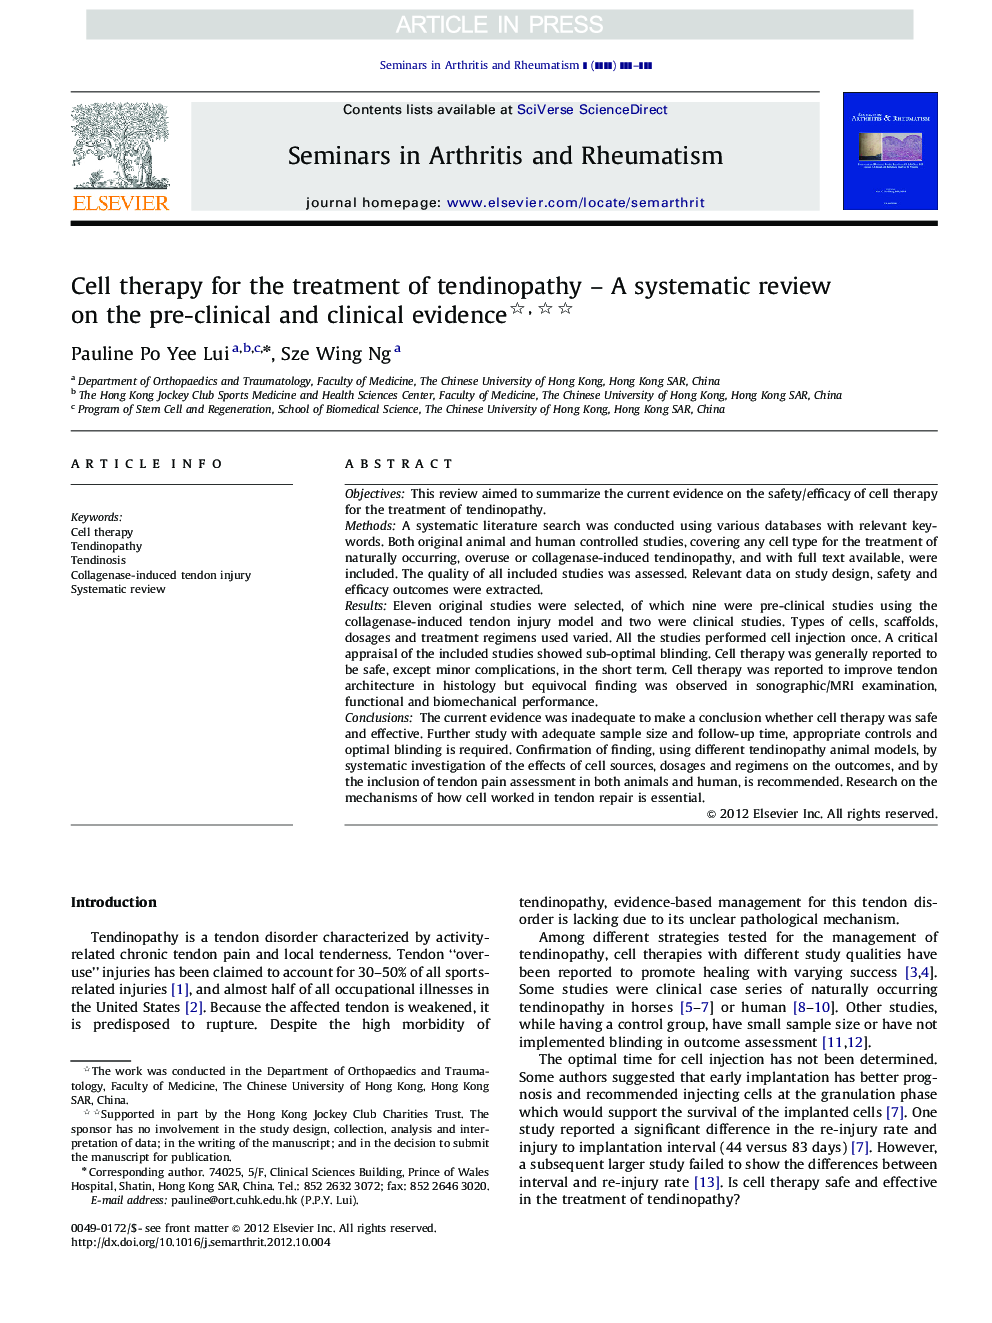 سلول درمان برای درمان تاندونویپاتی - یک بررسی سیستماتیک در مورد شواهد پیش از بالینی و بالینی 